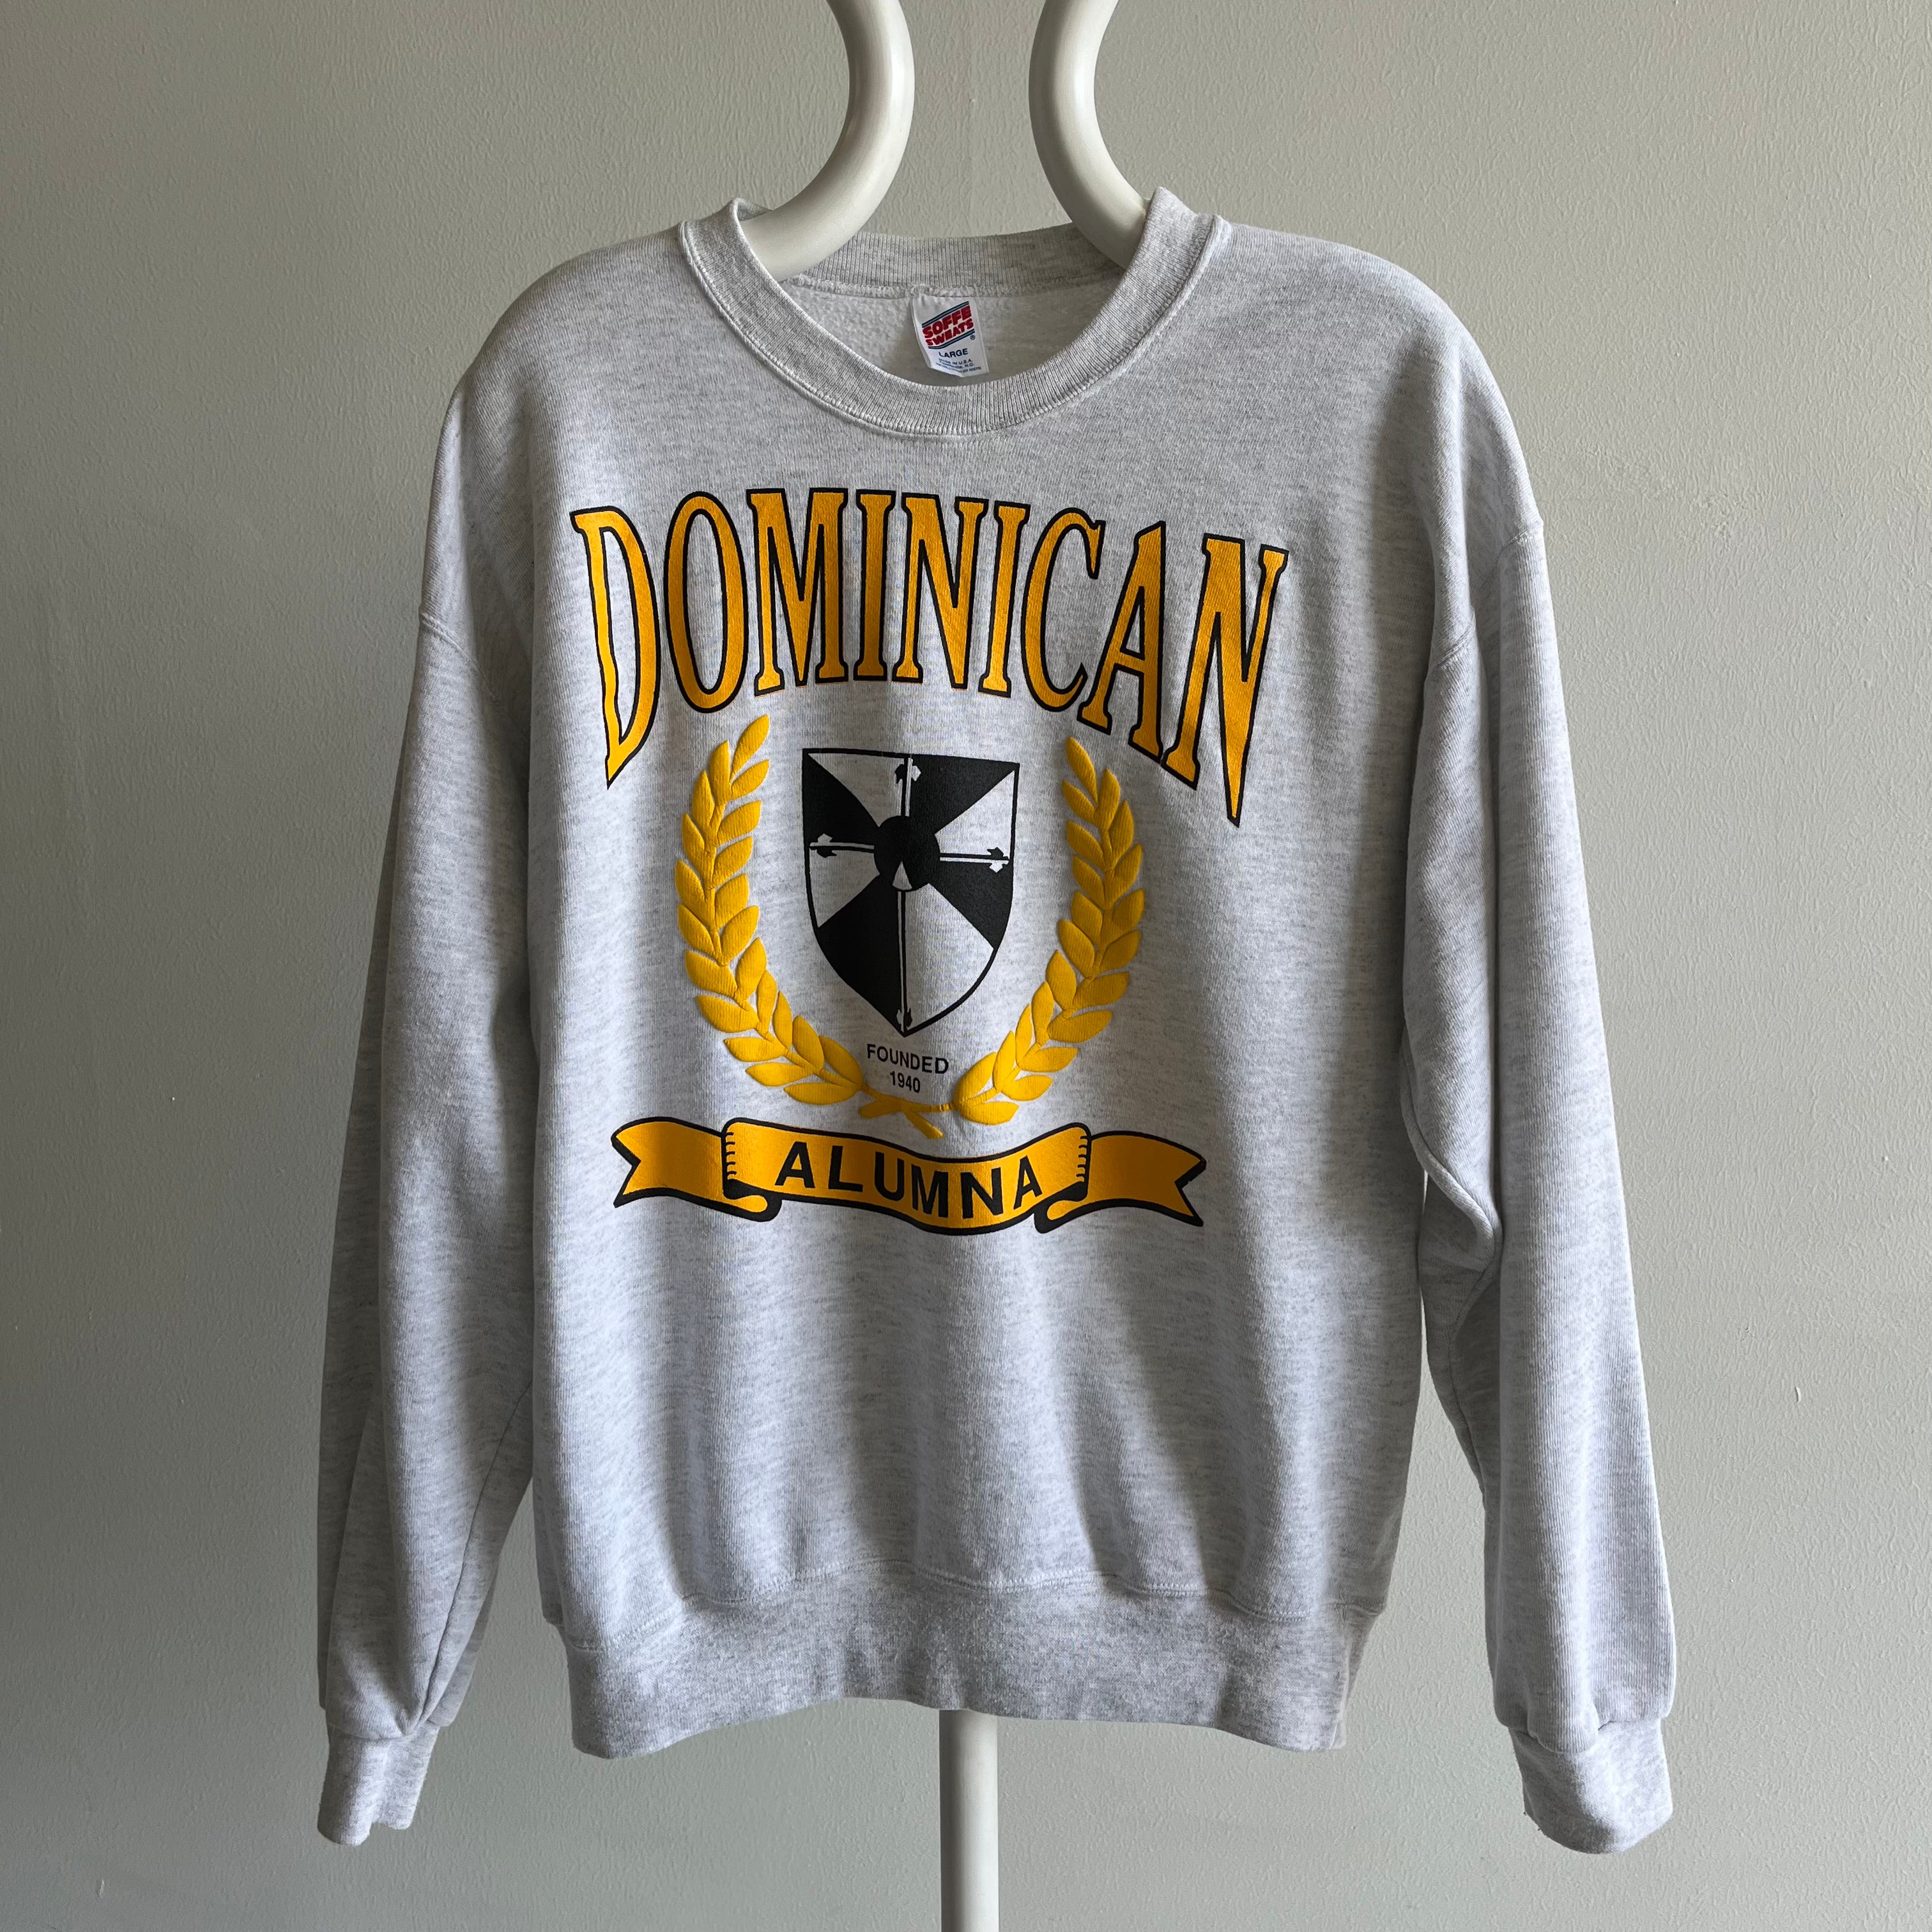 1990s Dominica Alumuna Sweatshirt